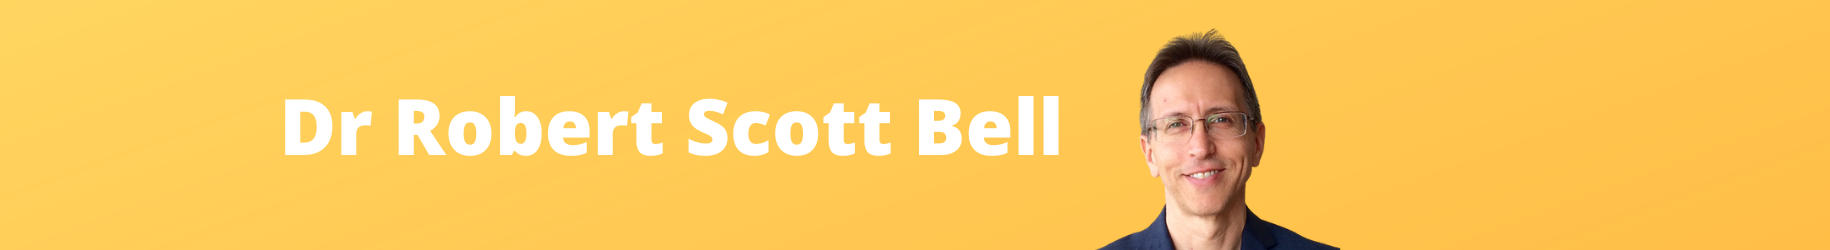 Dr Robert Scott Bell